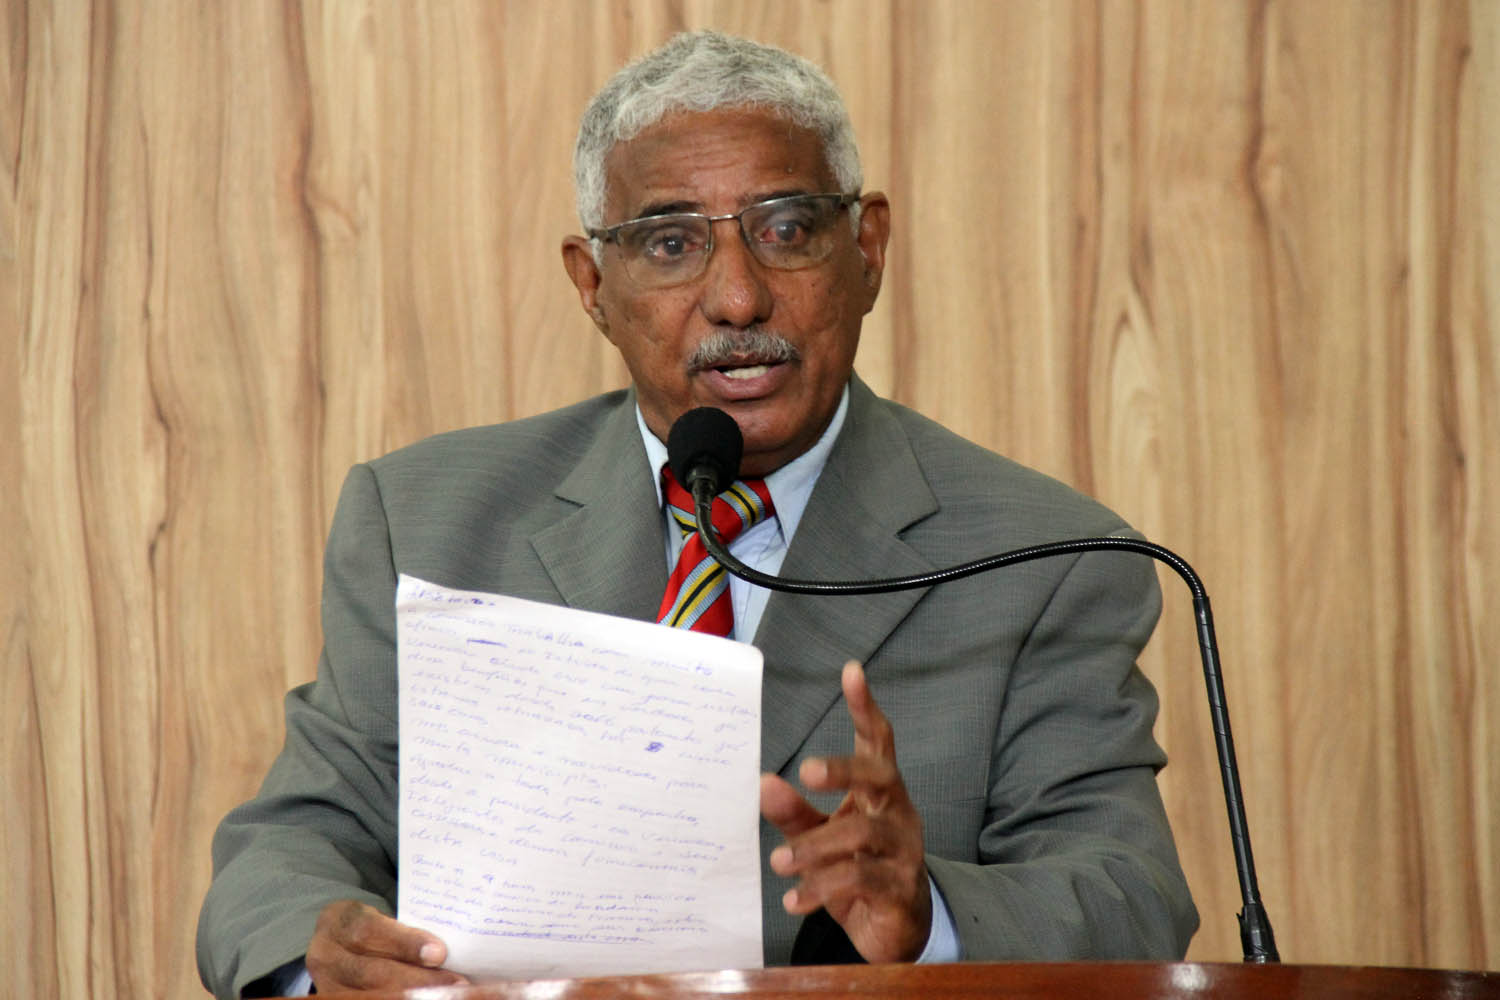 #PraCegoVer: foto mostra o vereador Tunico discursando na tribuna da Câmara. Ele segura um documento com várias anotações nas mãos.